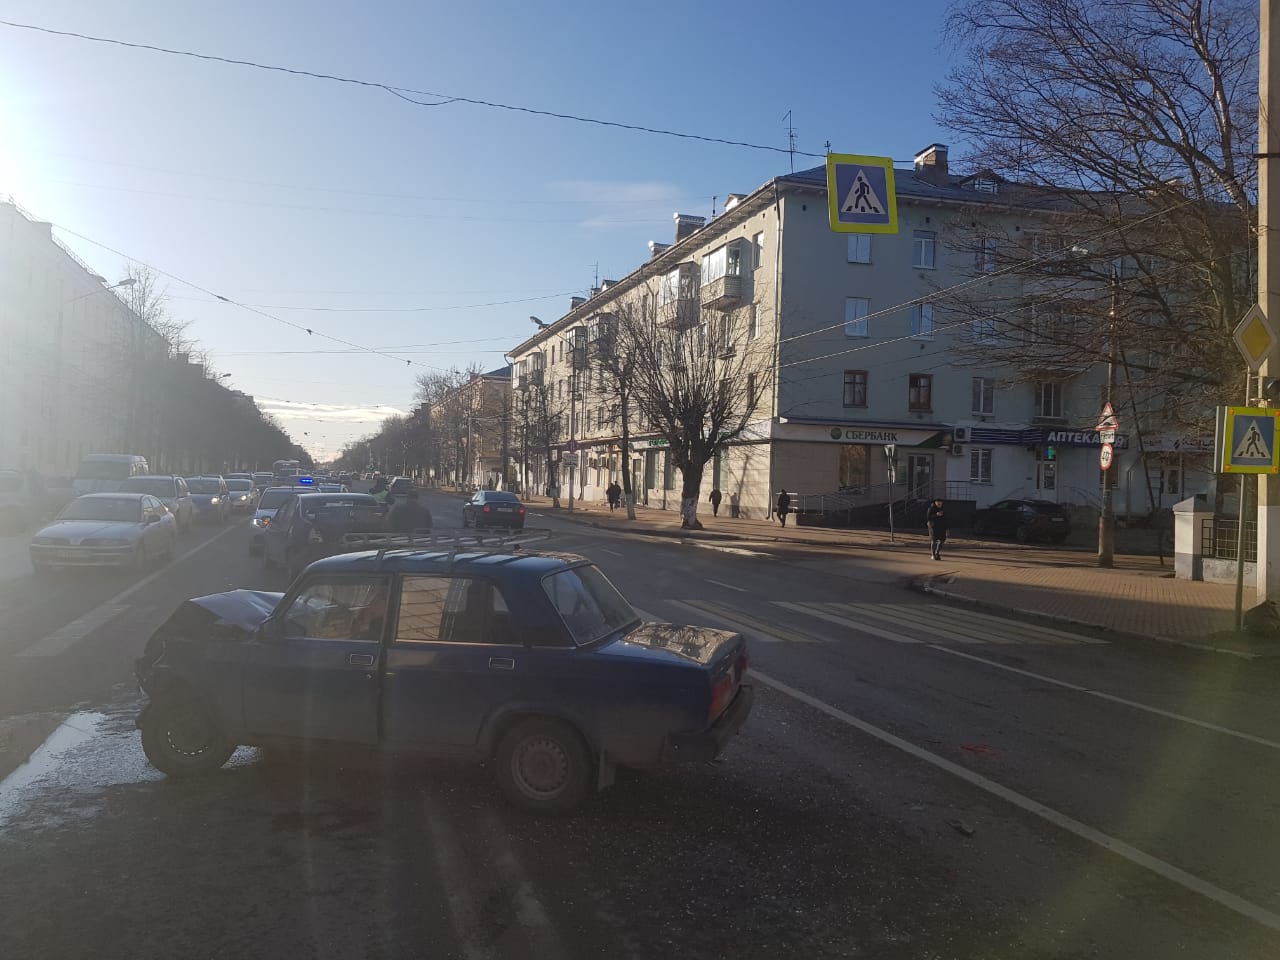 Двое детей пострадали в ДТП на проспекте Ленина в Твери по вине пьяного водителя